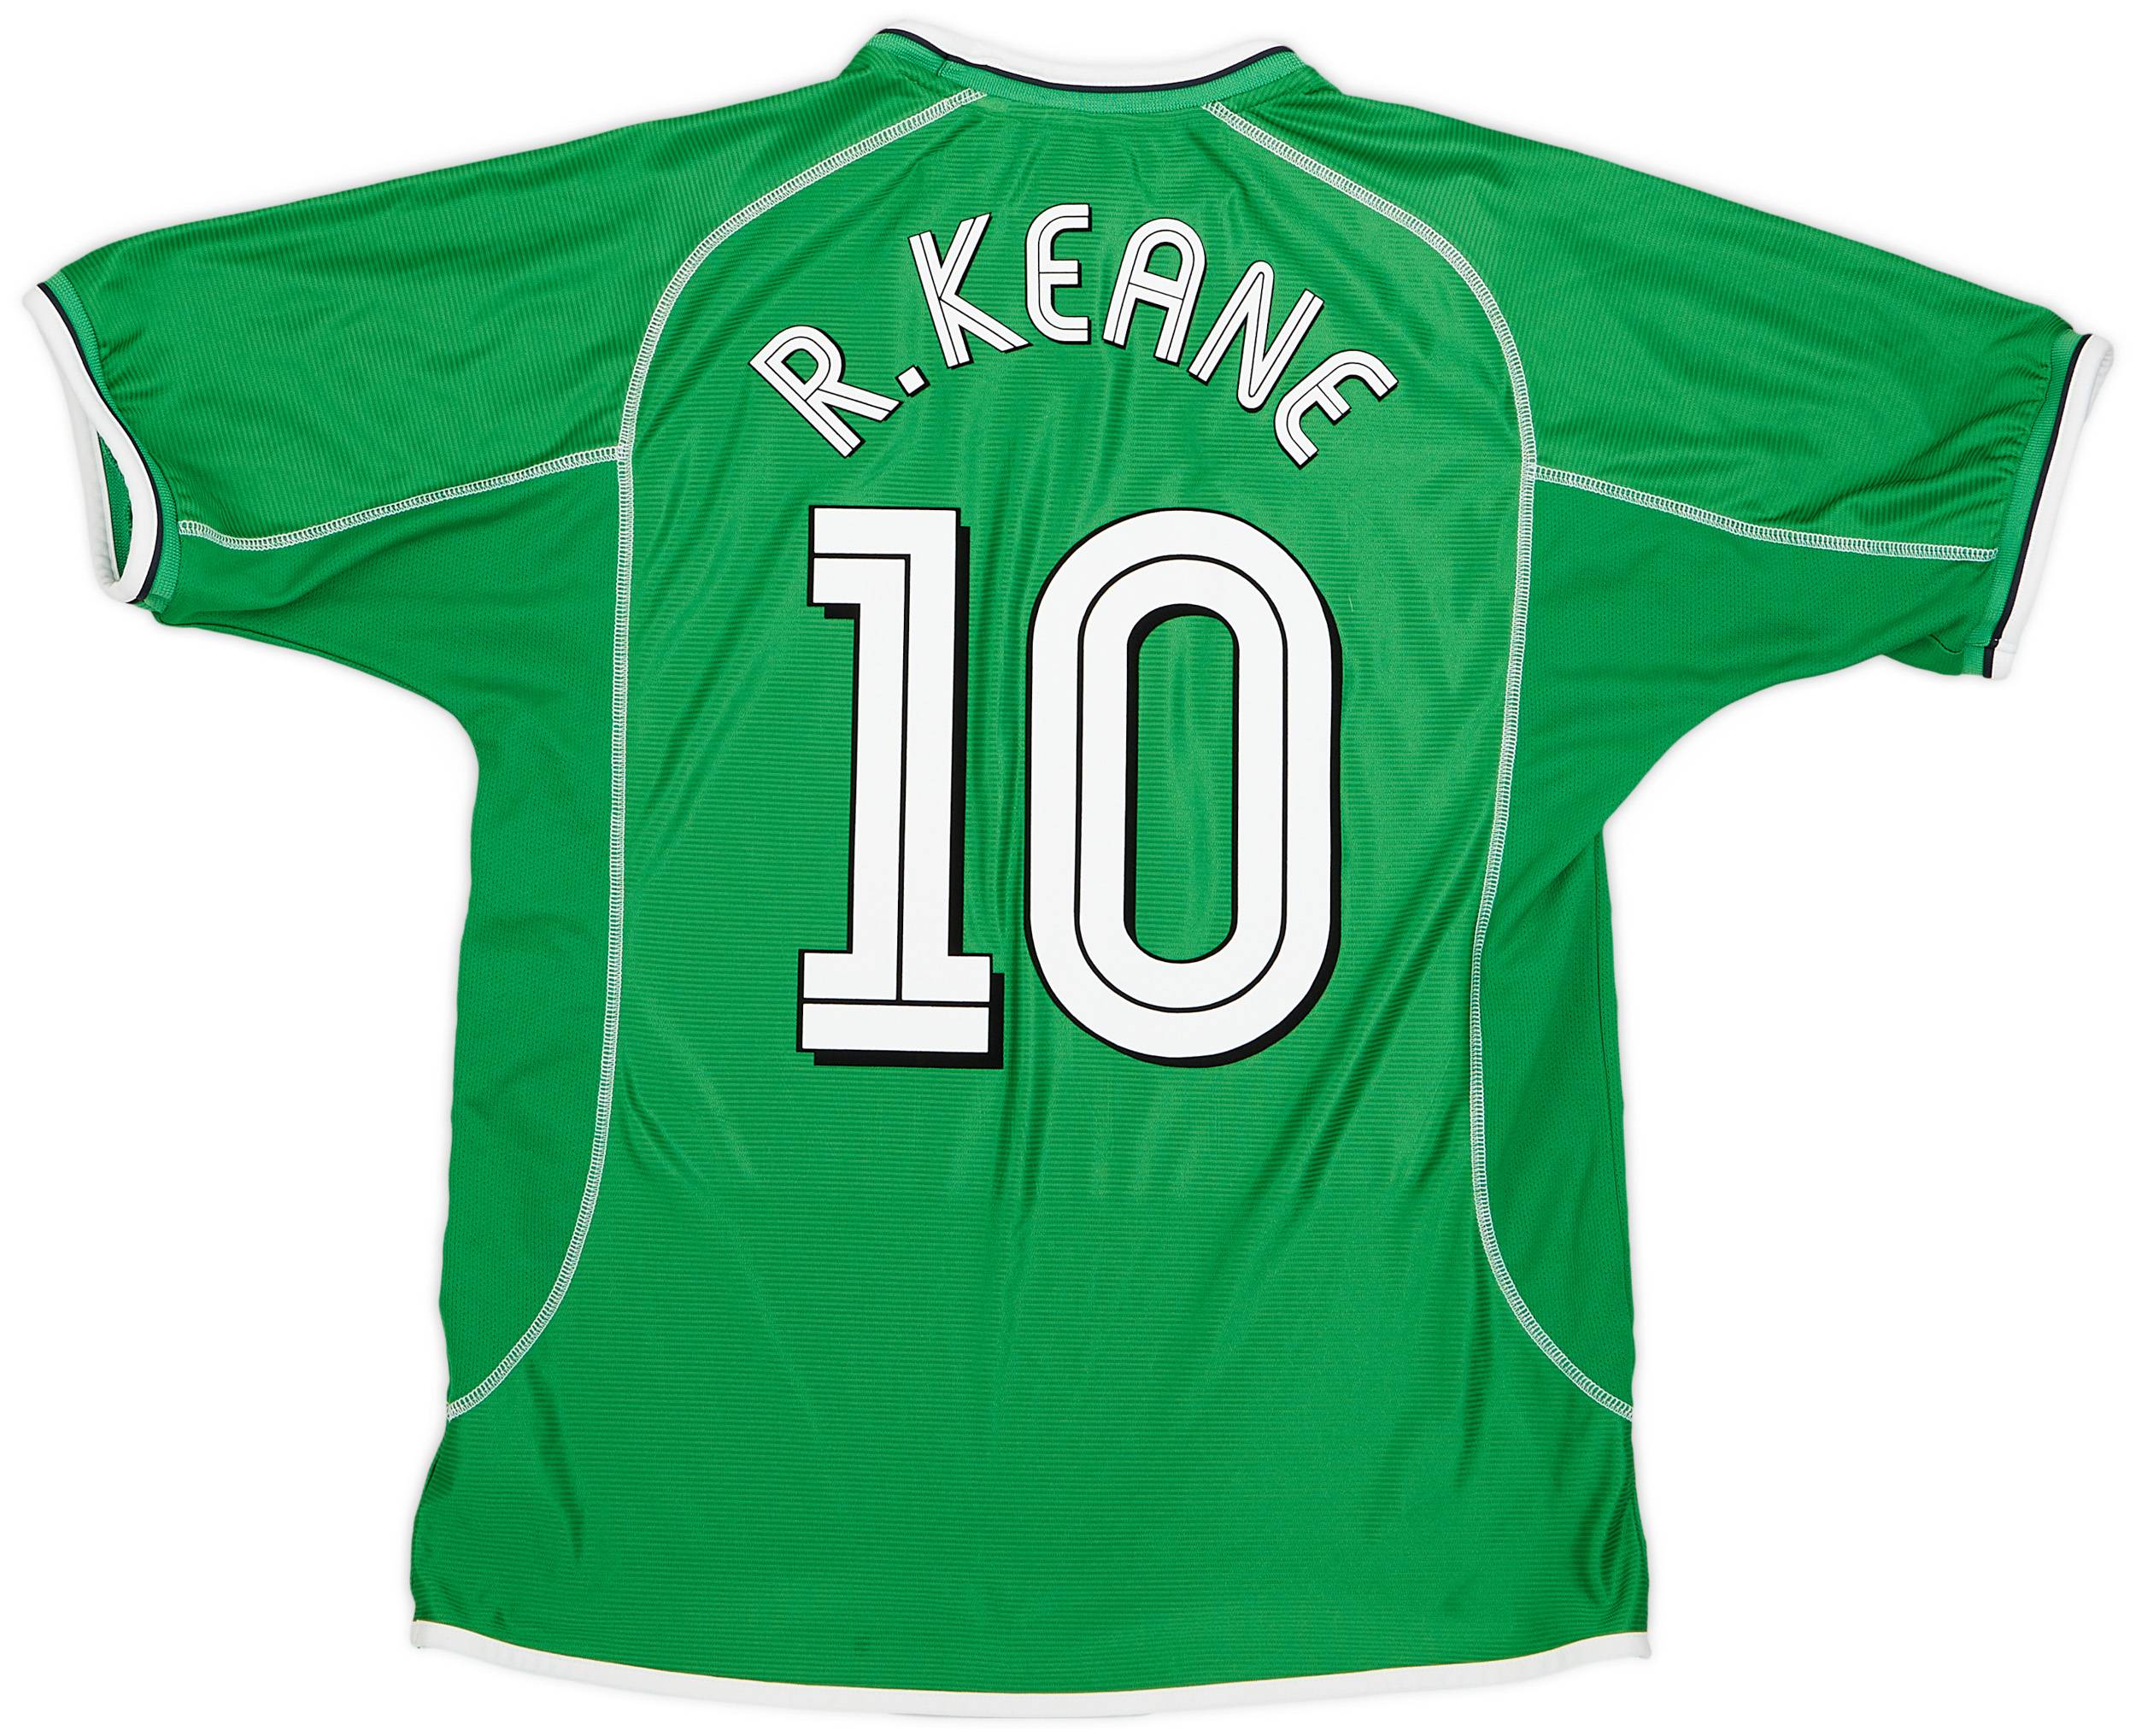 2001-03 Ireland Home Shirt R.Keane #10 - 9/10 - (L)